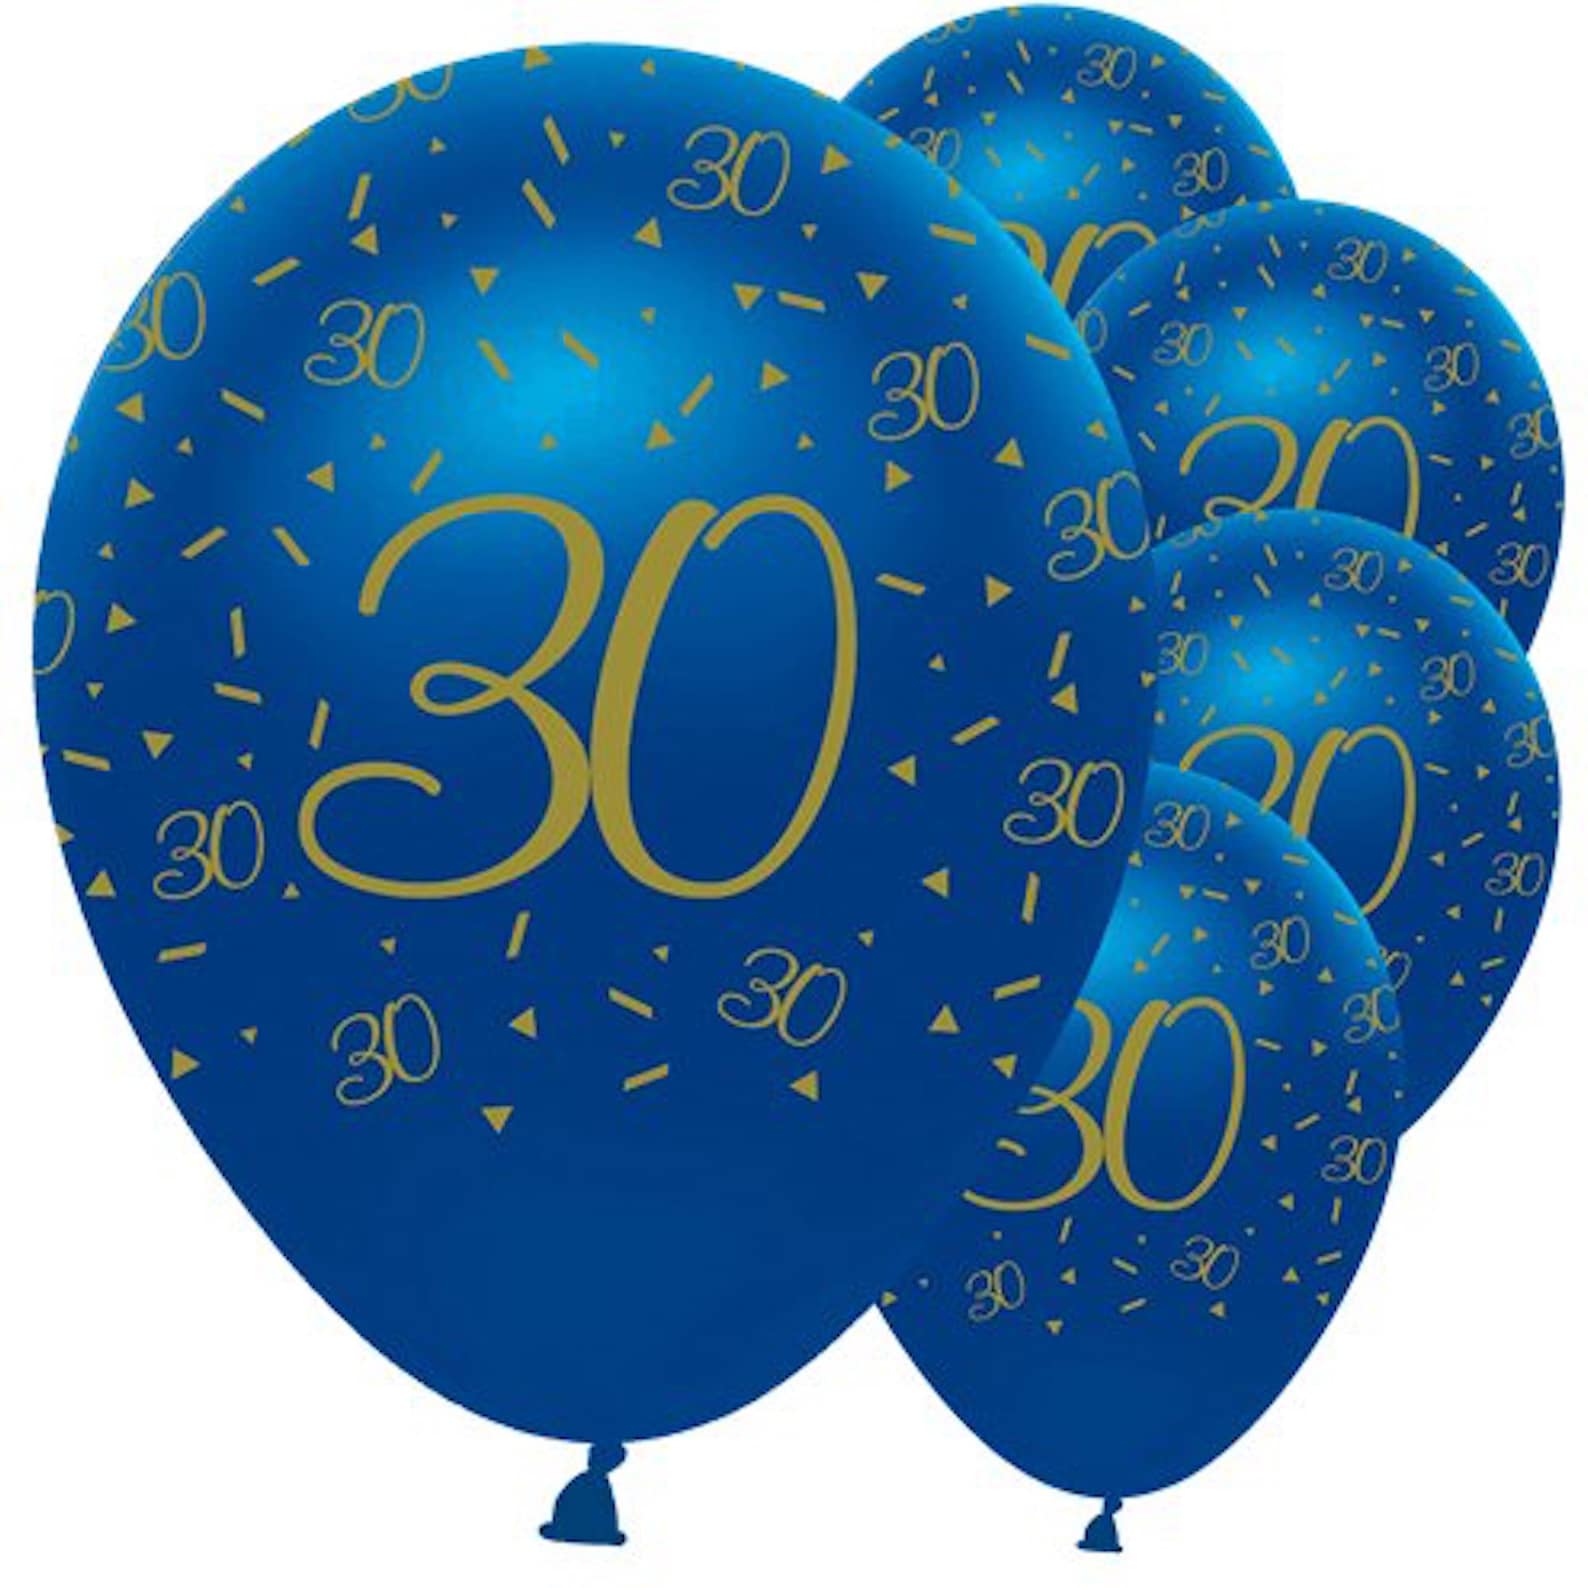 5 Navy & Gold 30th Birthday Balloons 30th birthday party | Etsy